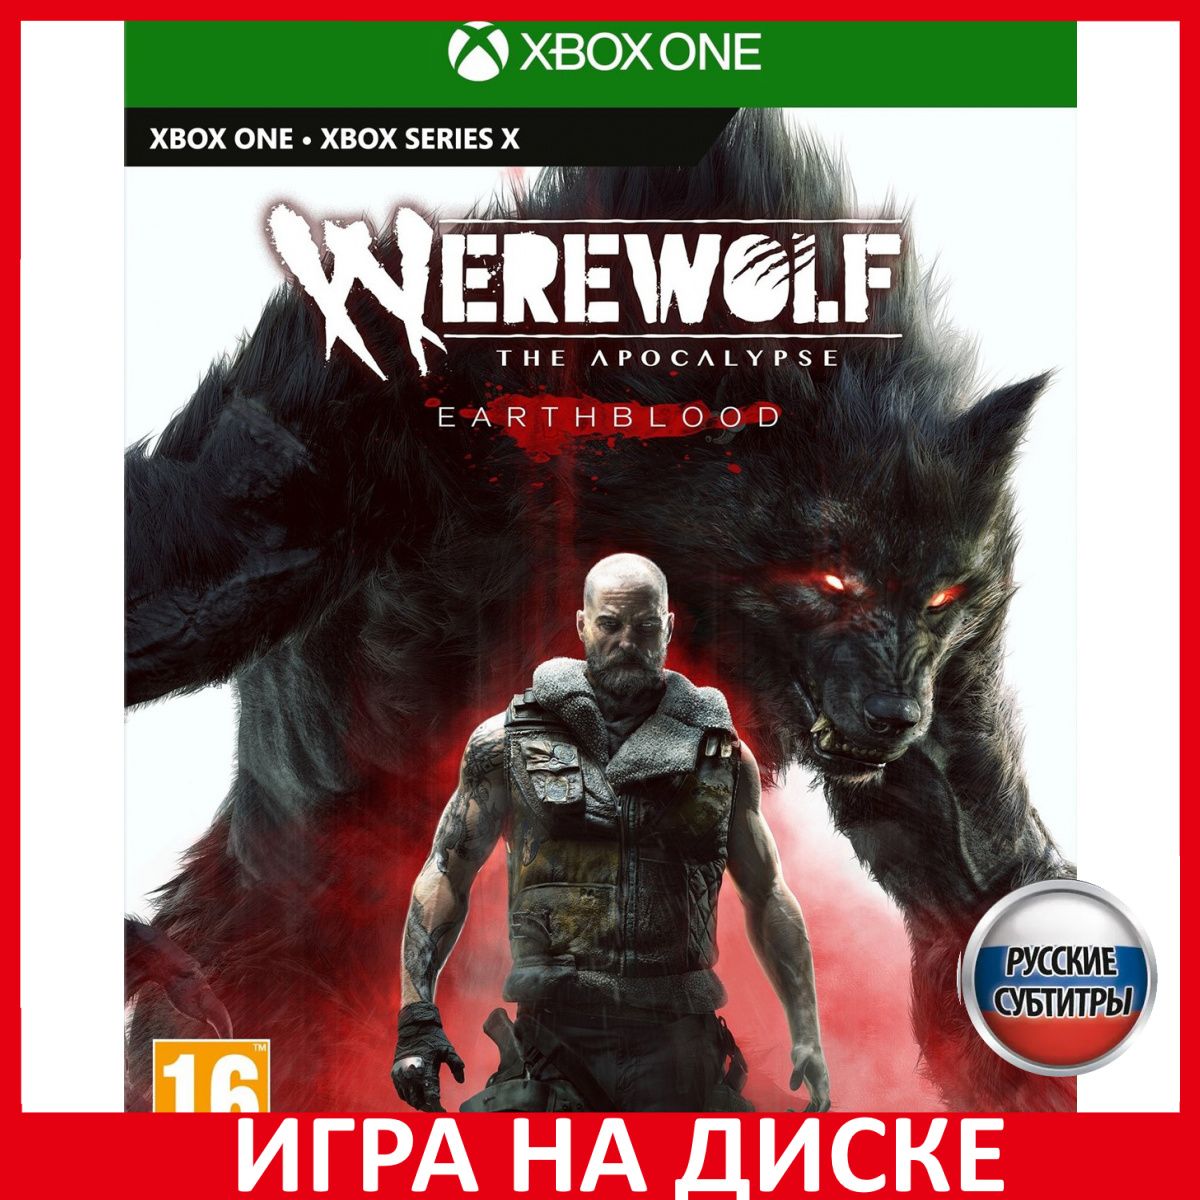 ИграWerewolfTheApocalypse-Eart(XboxSeries,XboxOne,Русскиесубтитры)